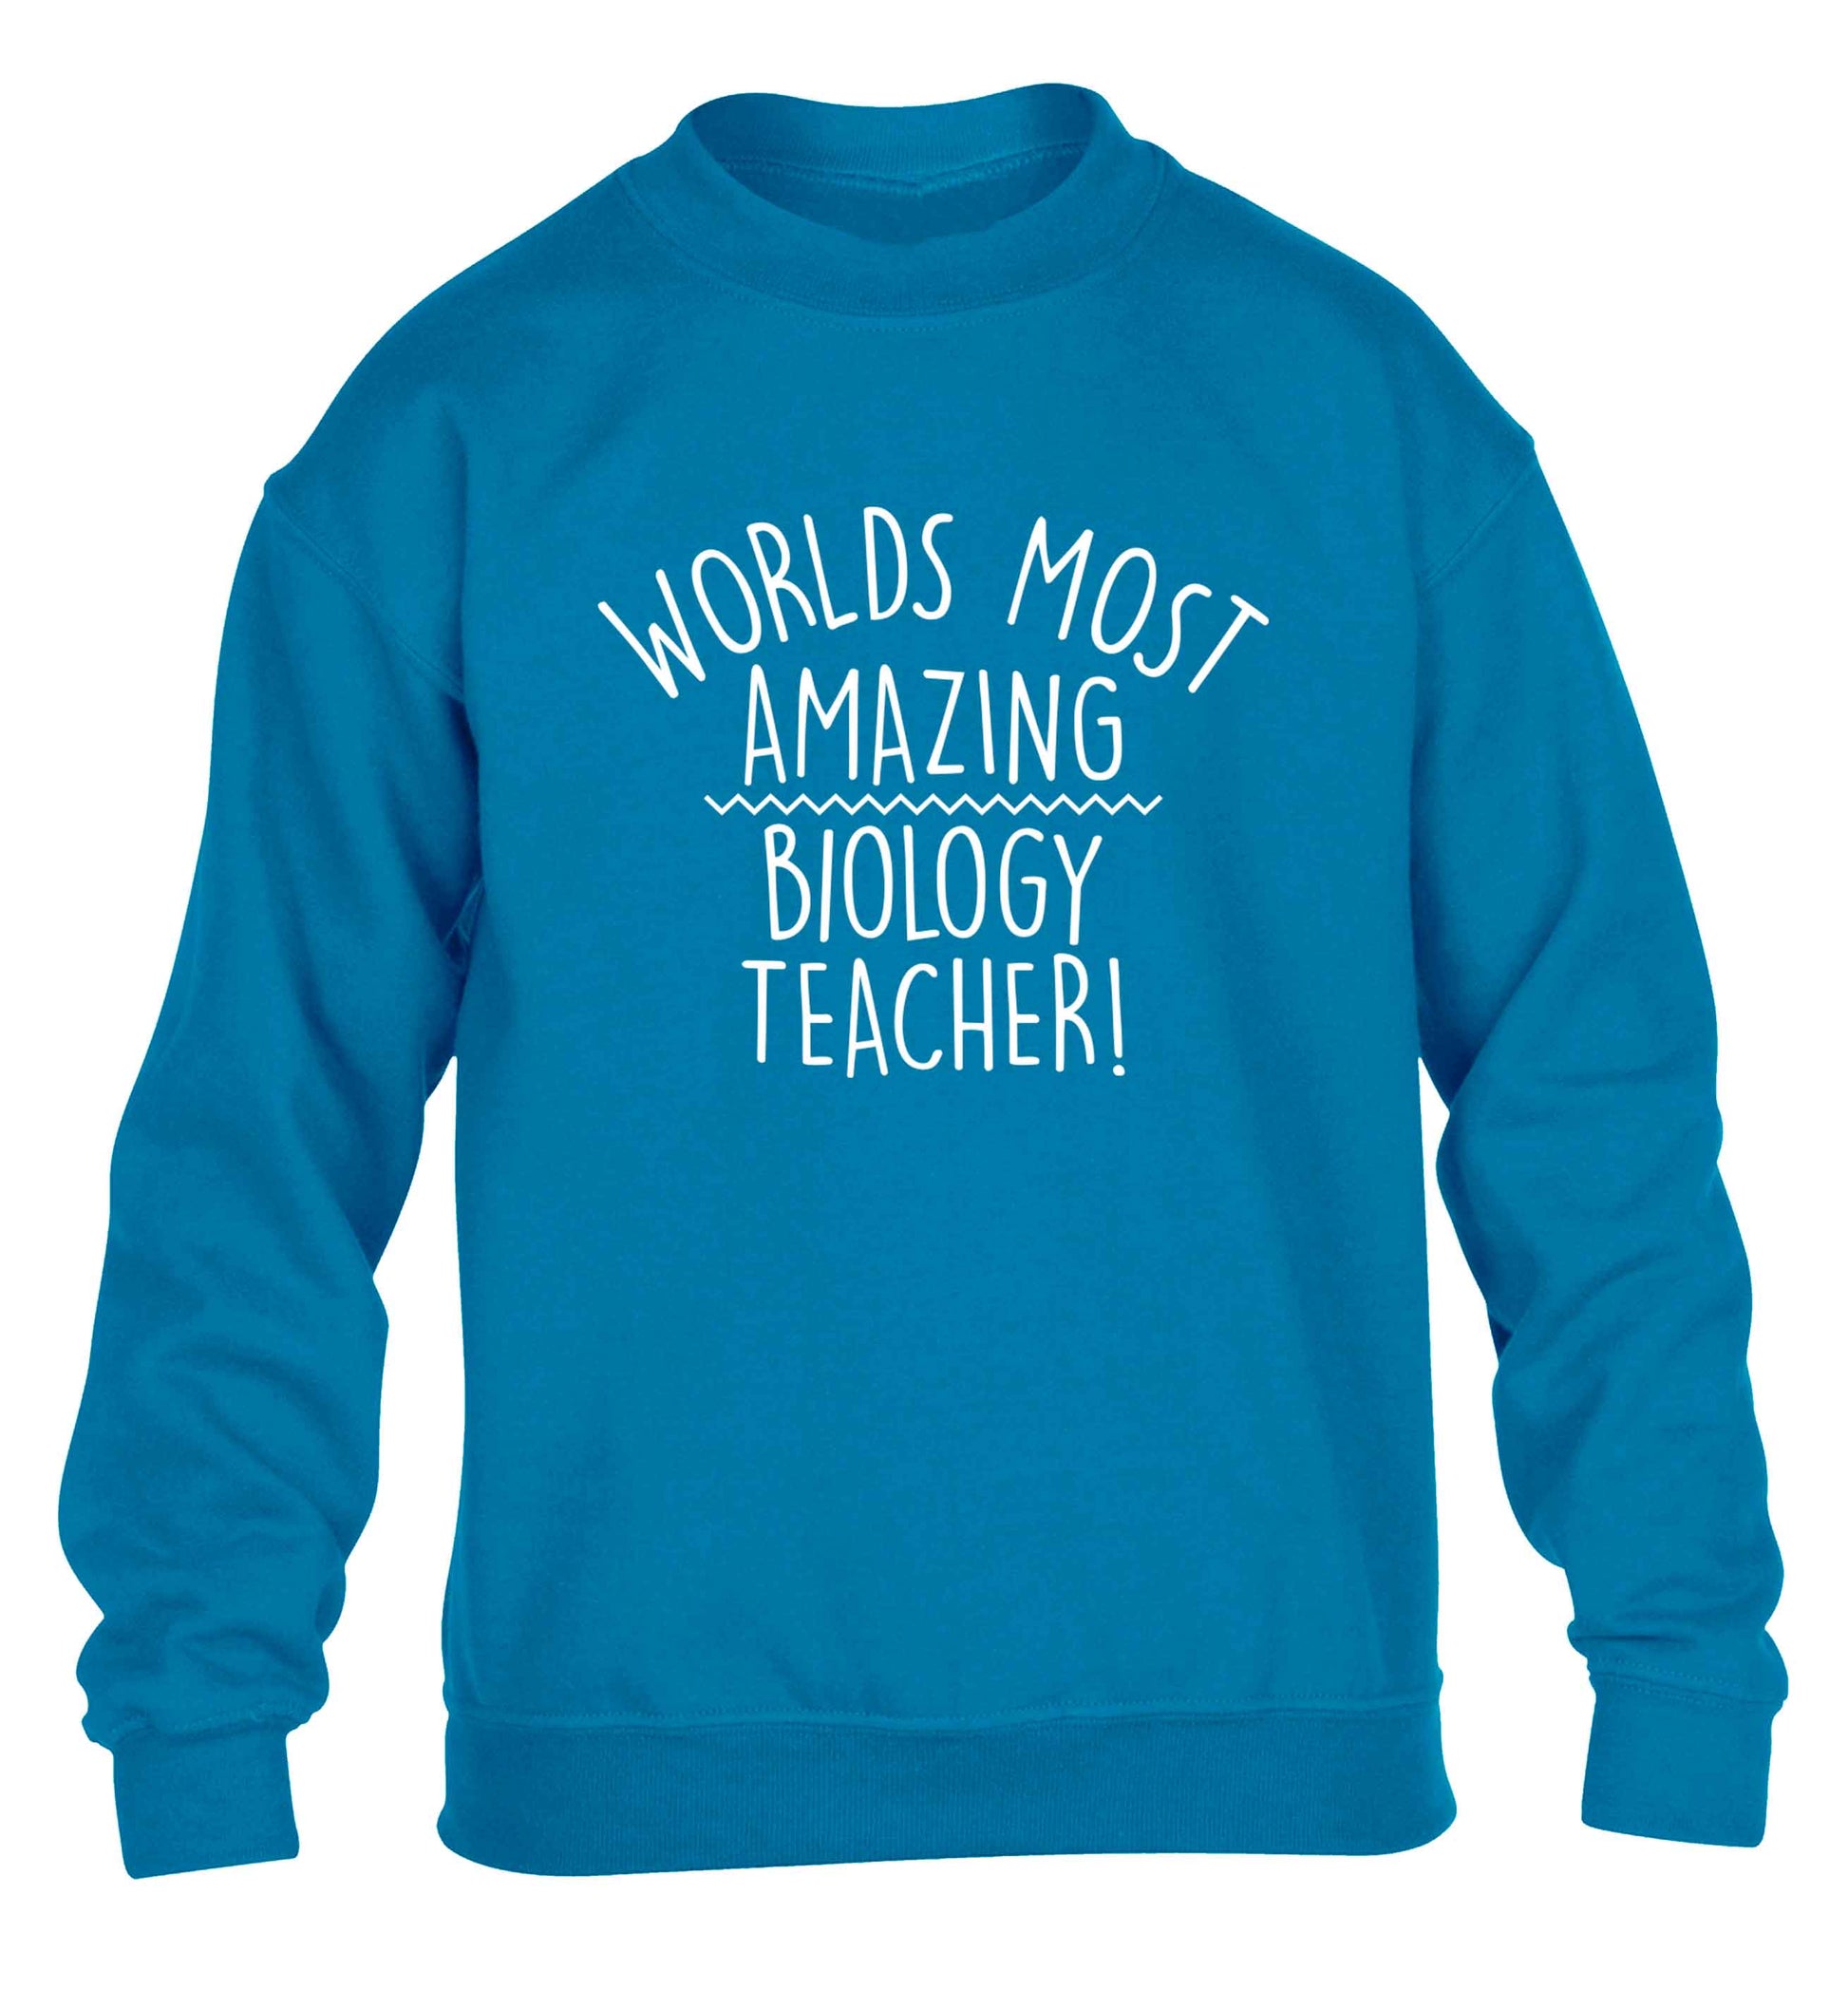 Worlds most amazing biology teacher children's blue sweater 12-13 Years